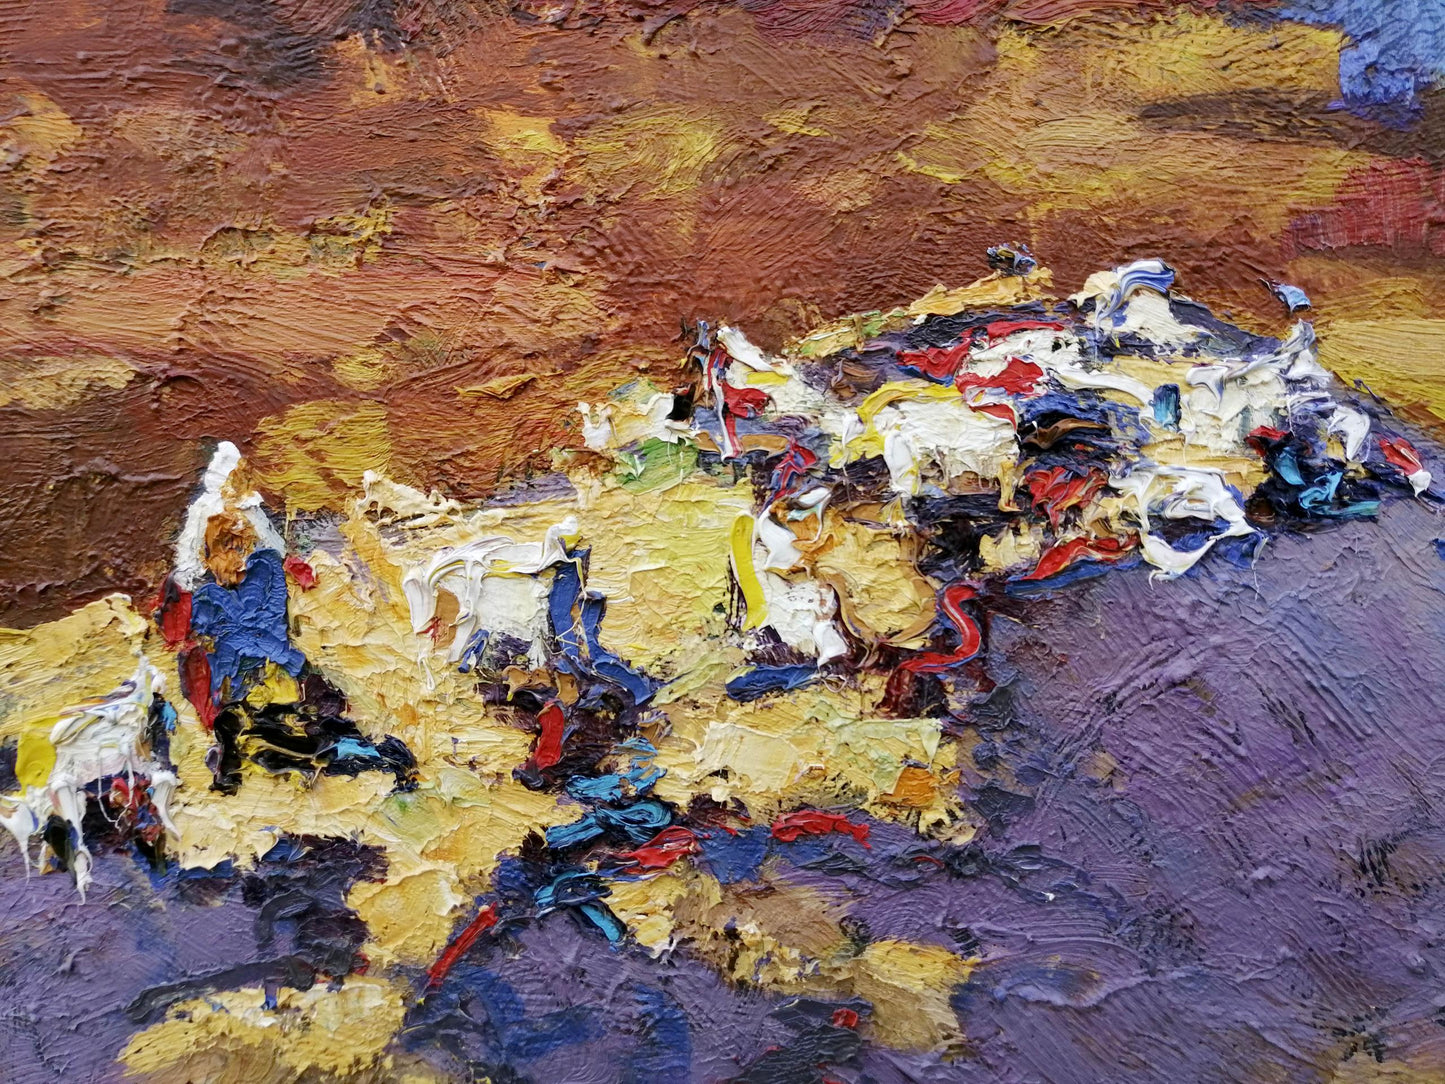 Oil Painting Village landscape Art